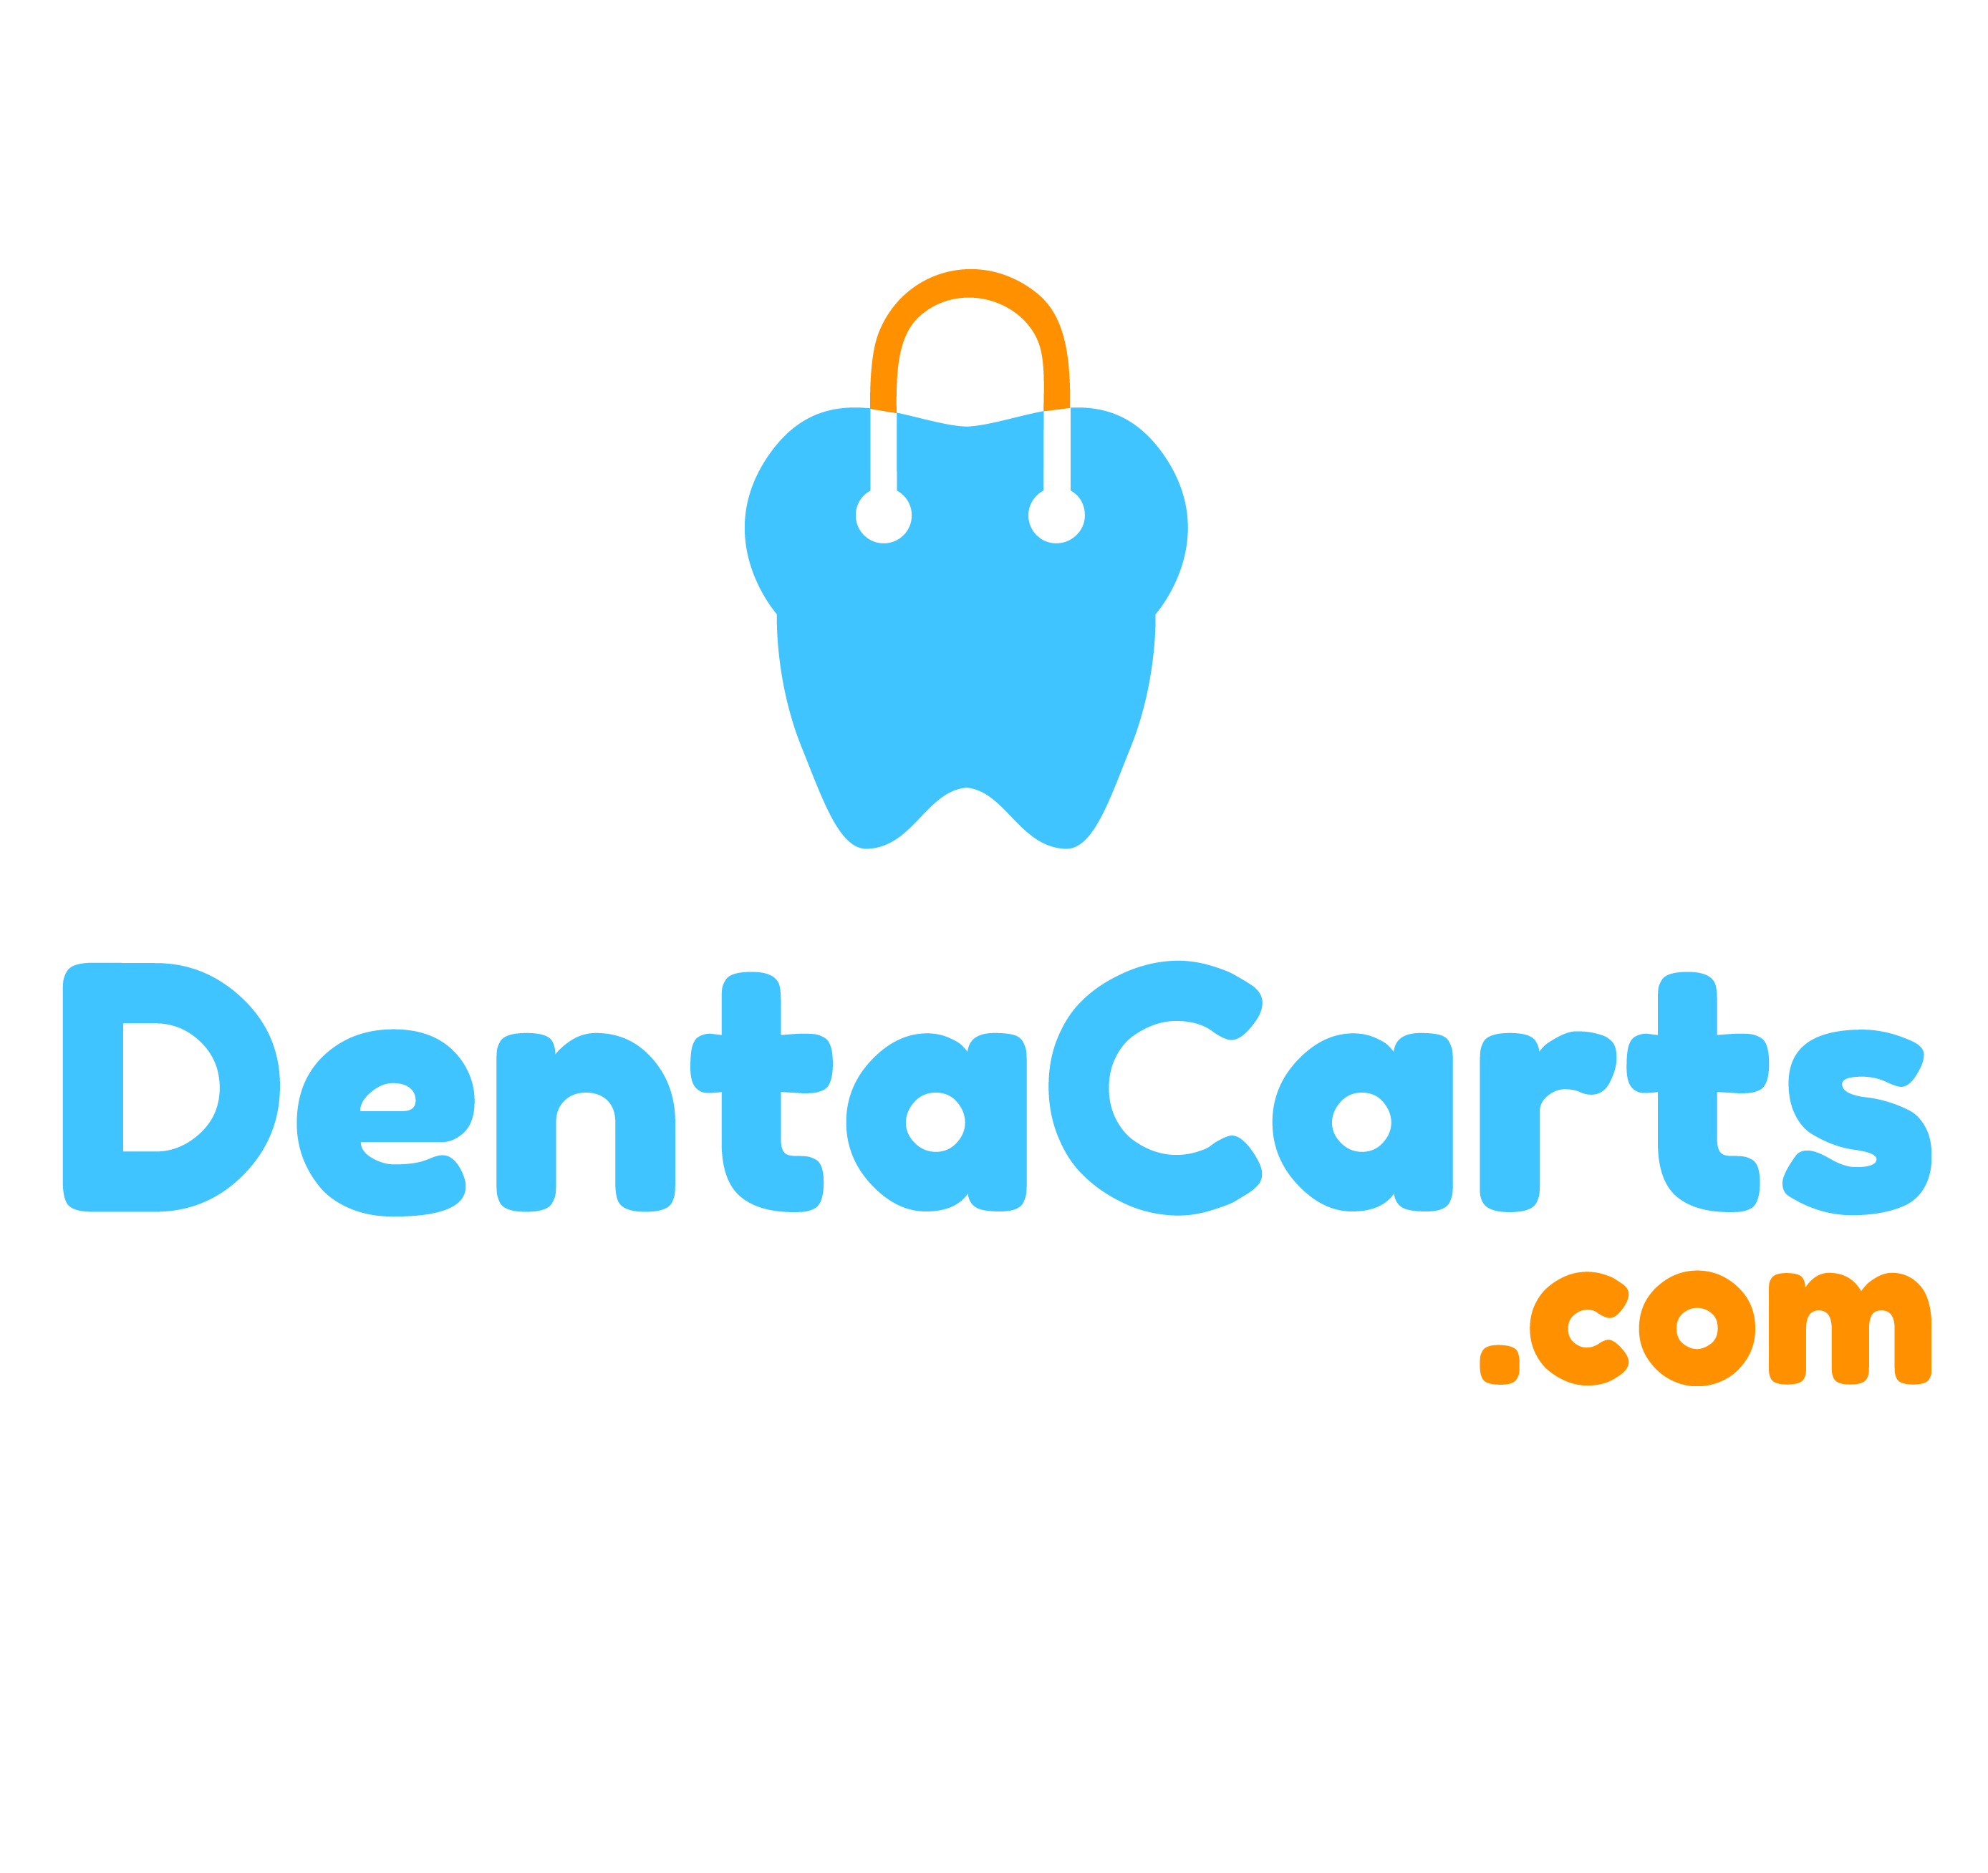 Denta Carts